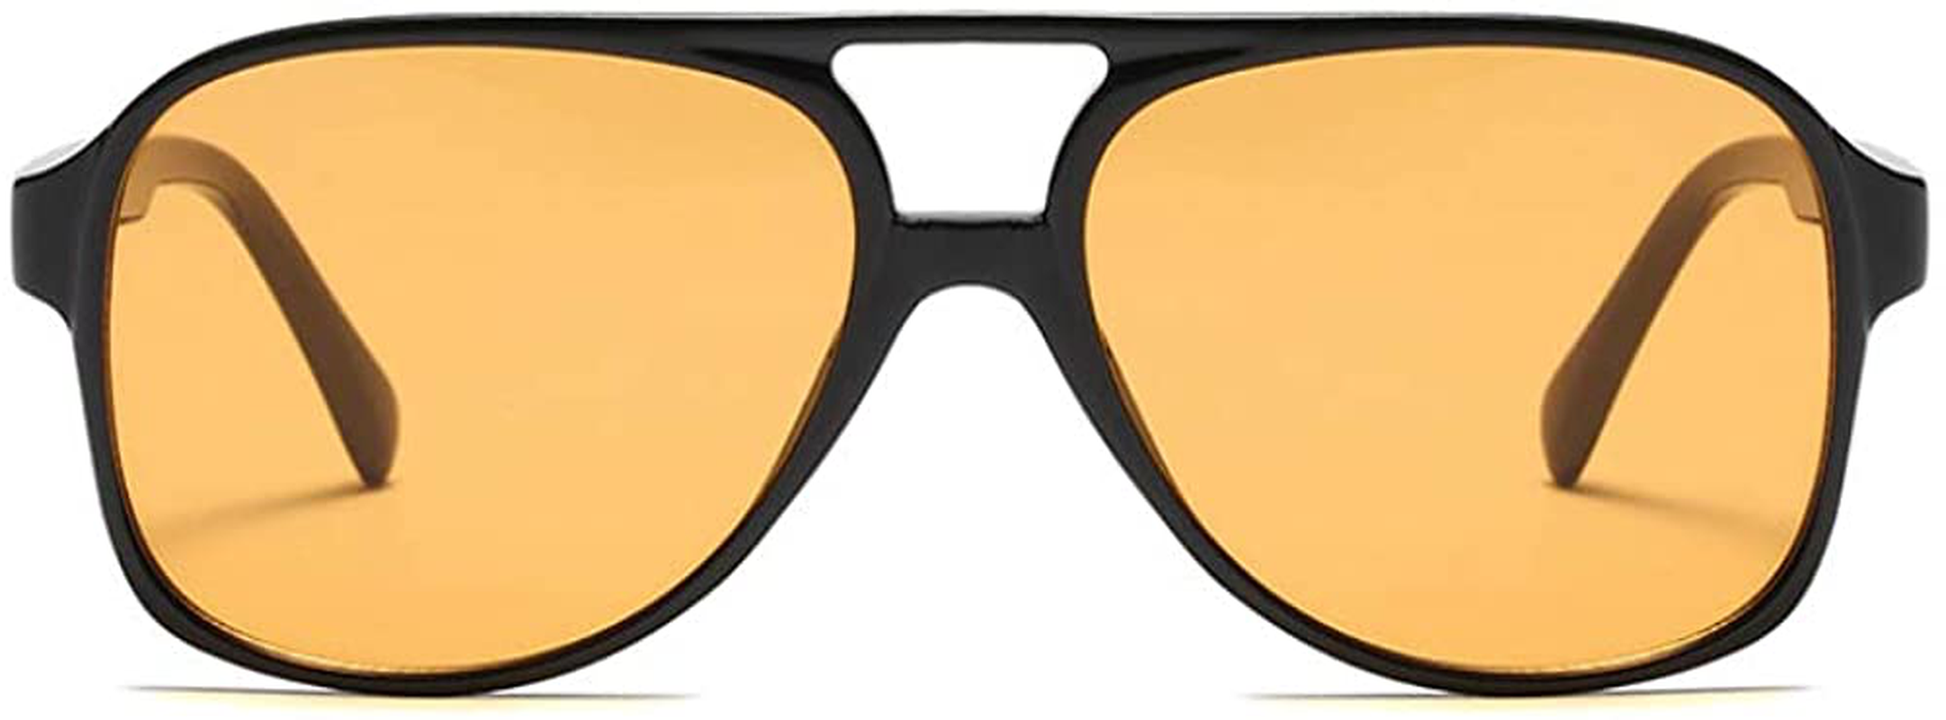 Vintage Retro 70S Sunglasses for Women Men Classic Large Squared Aviator Frame UV400 Trendy Orange Glasses